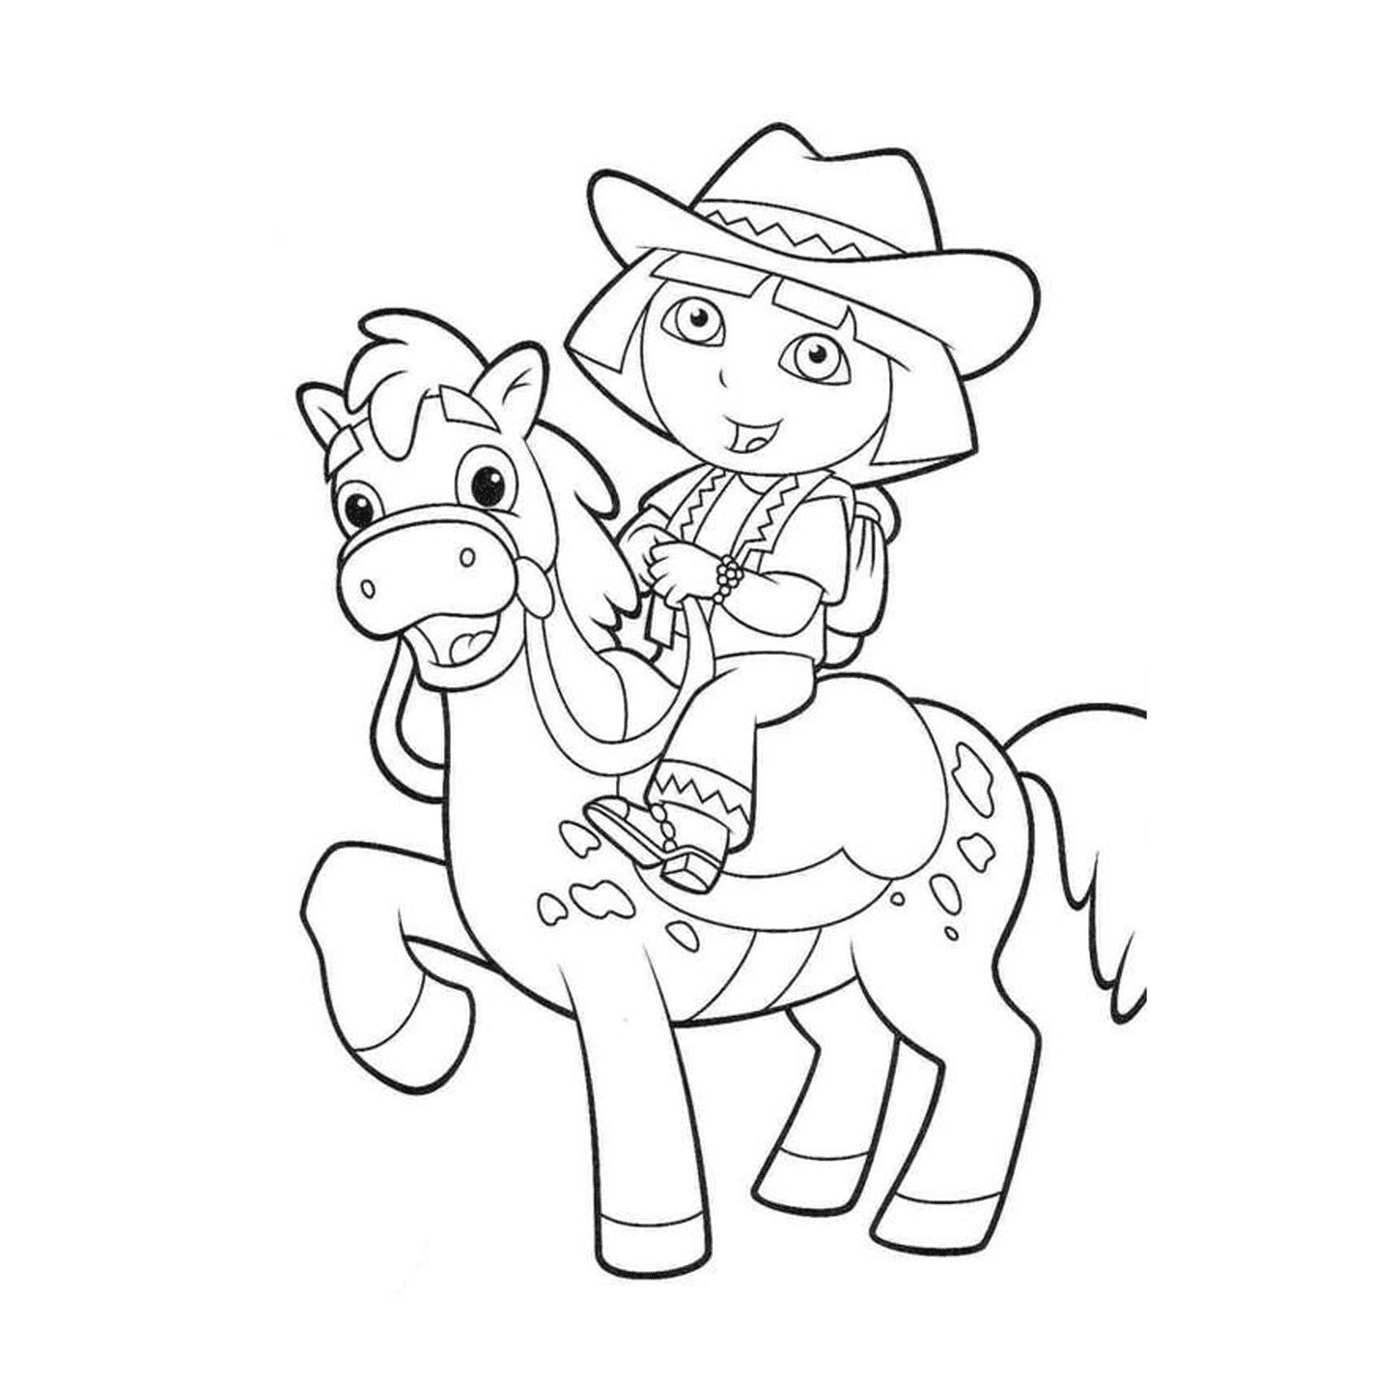   Dora fait de l'équitation sur un cheval 